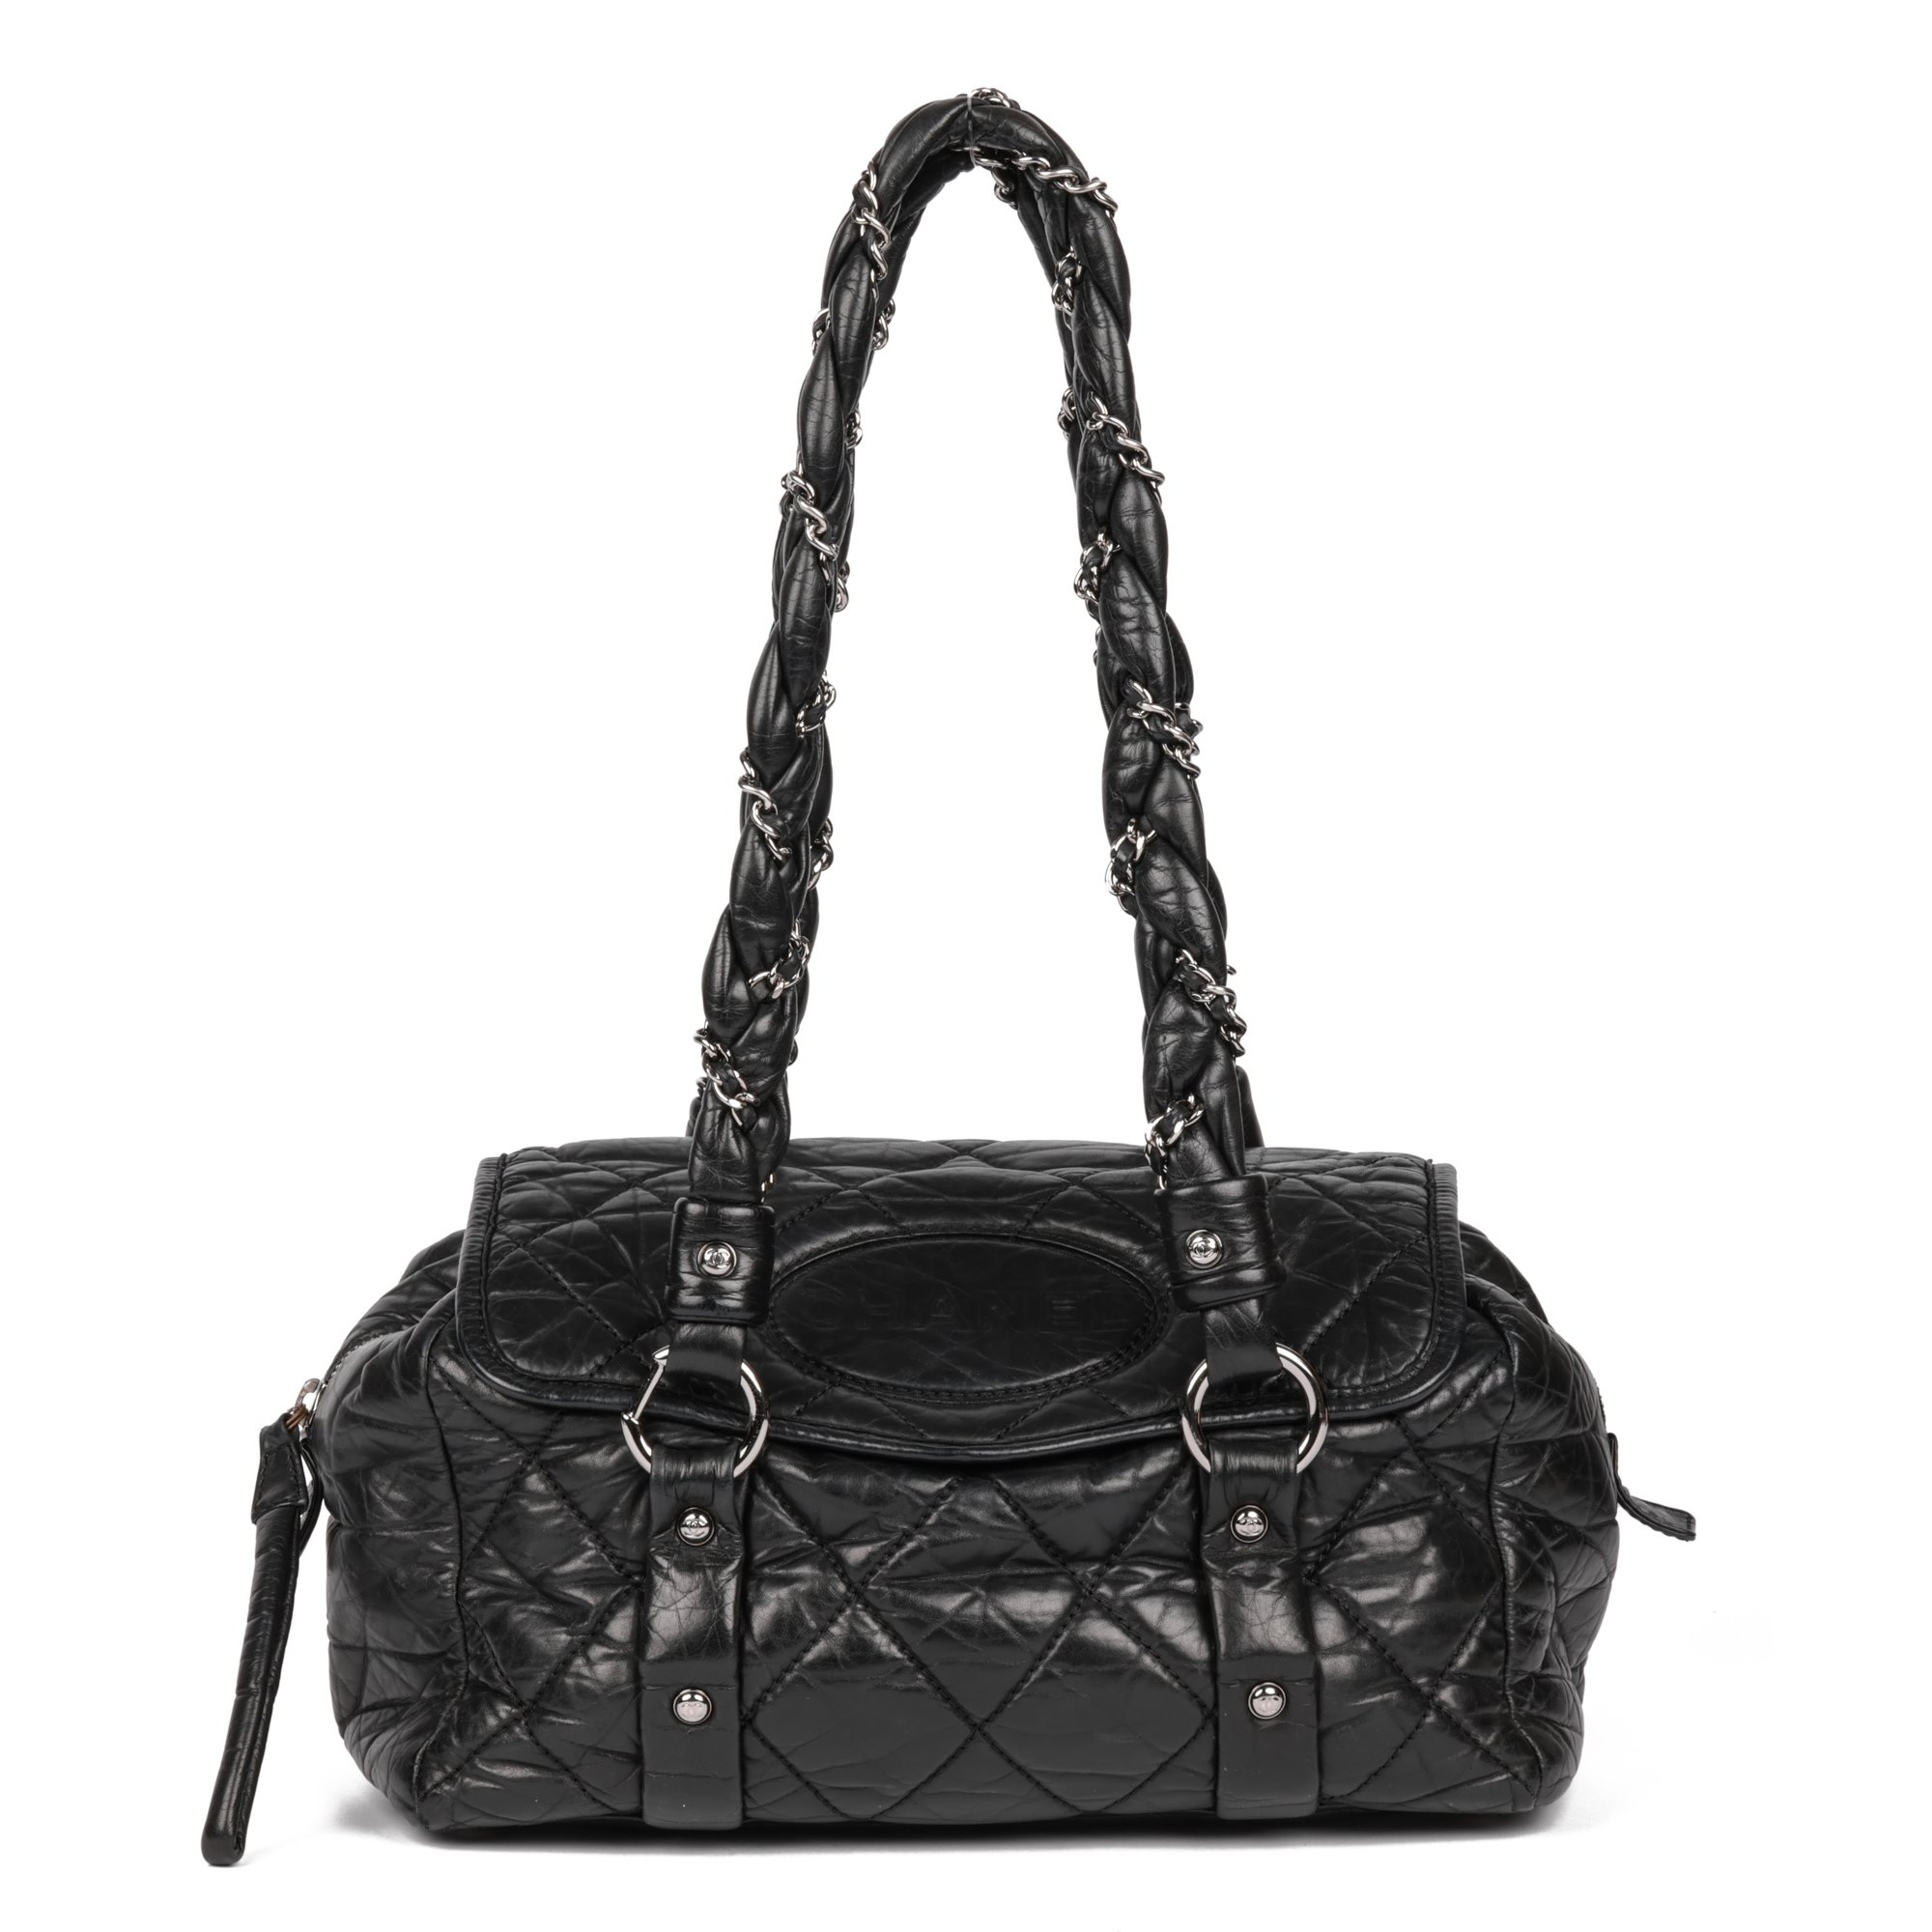 Chanel Lady Braid Flap Tote 2008 CB862 | Second Hand Handbags